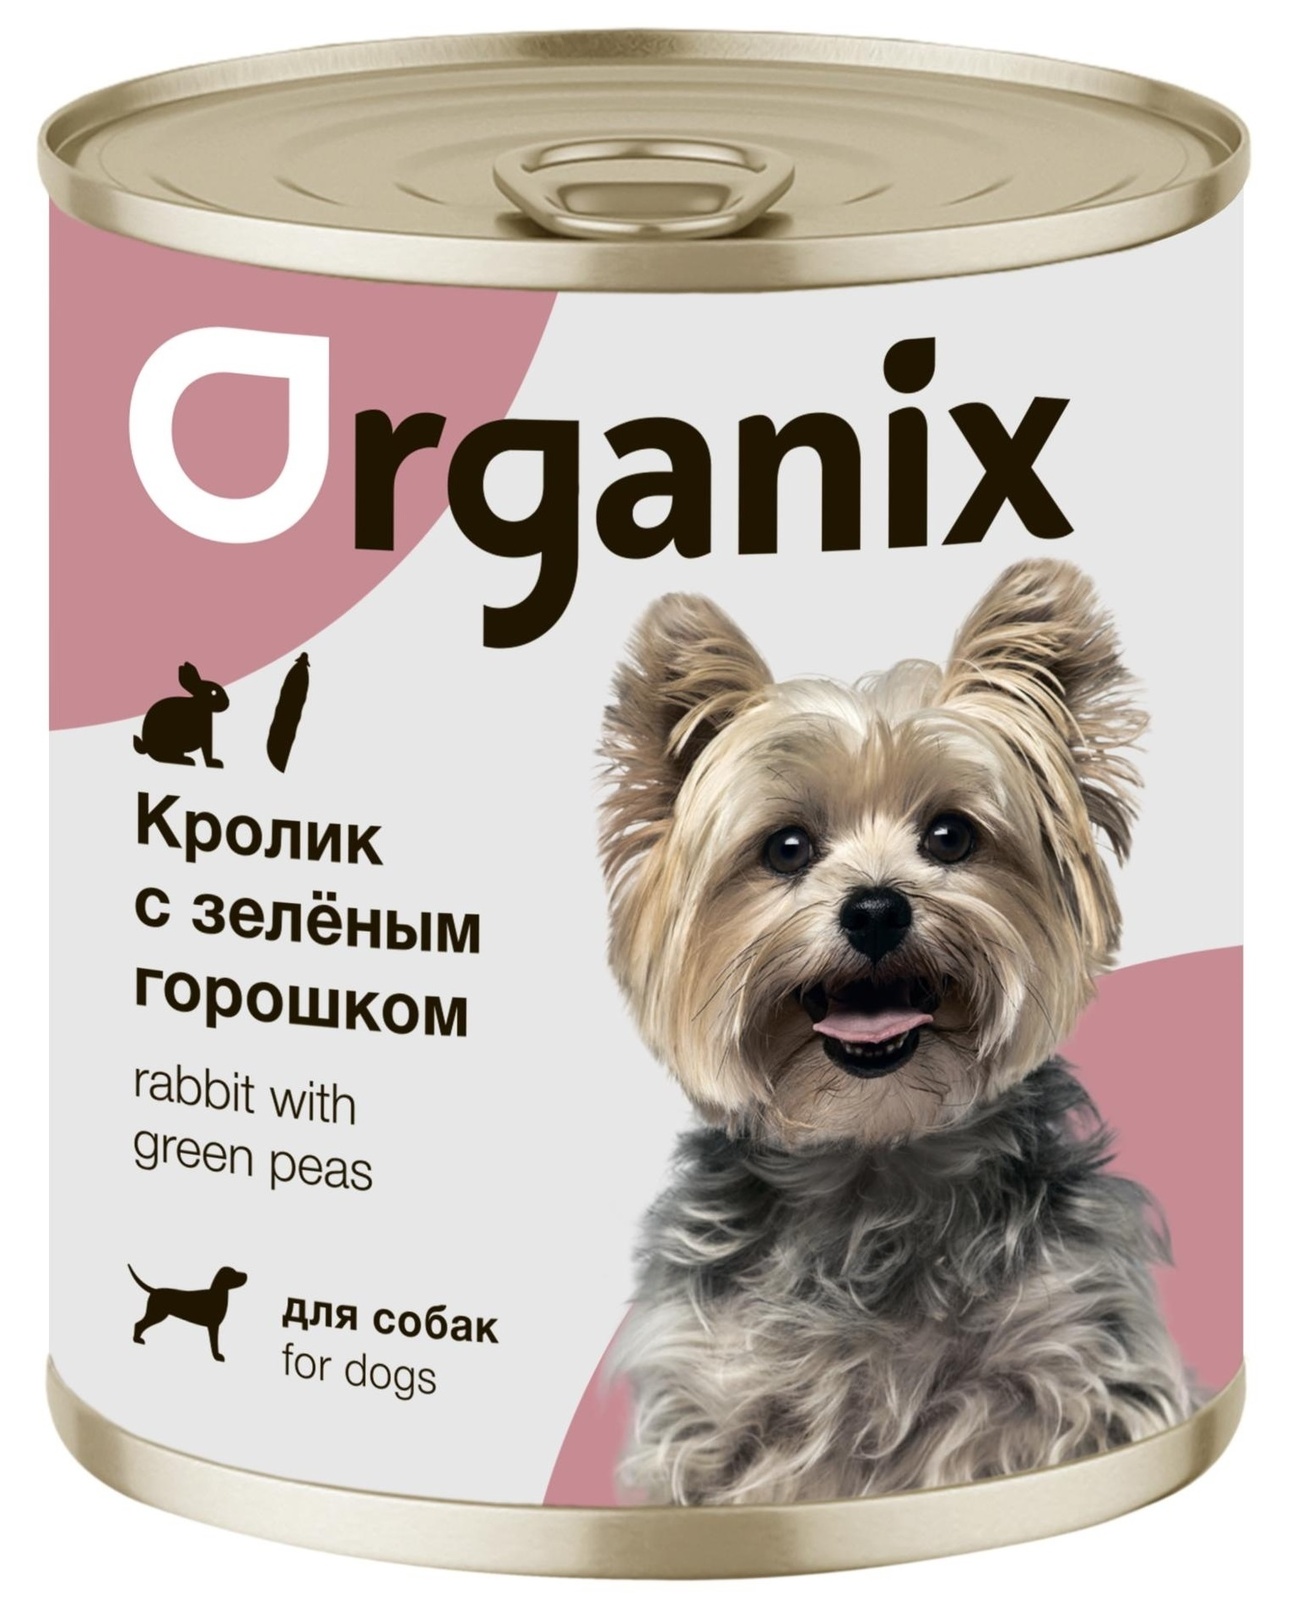 Organix консервы Organix консервы для собак Кролик с зеленым горошком (100 г) organix консервы organix консервы для собак утка индейка картофель 100 г